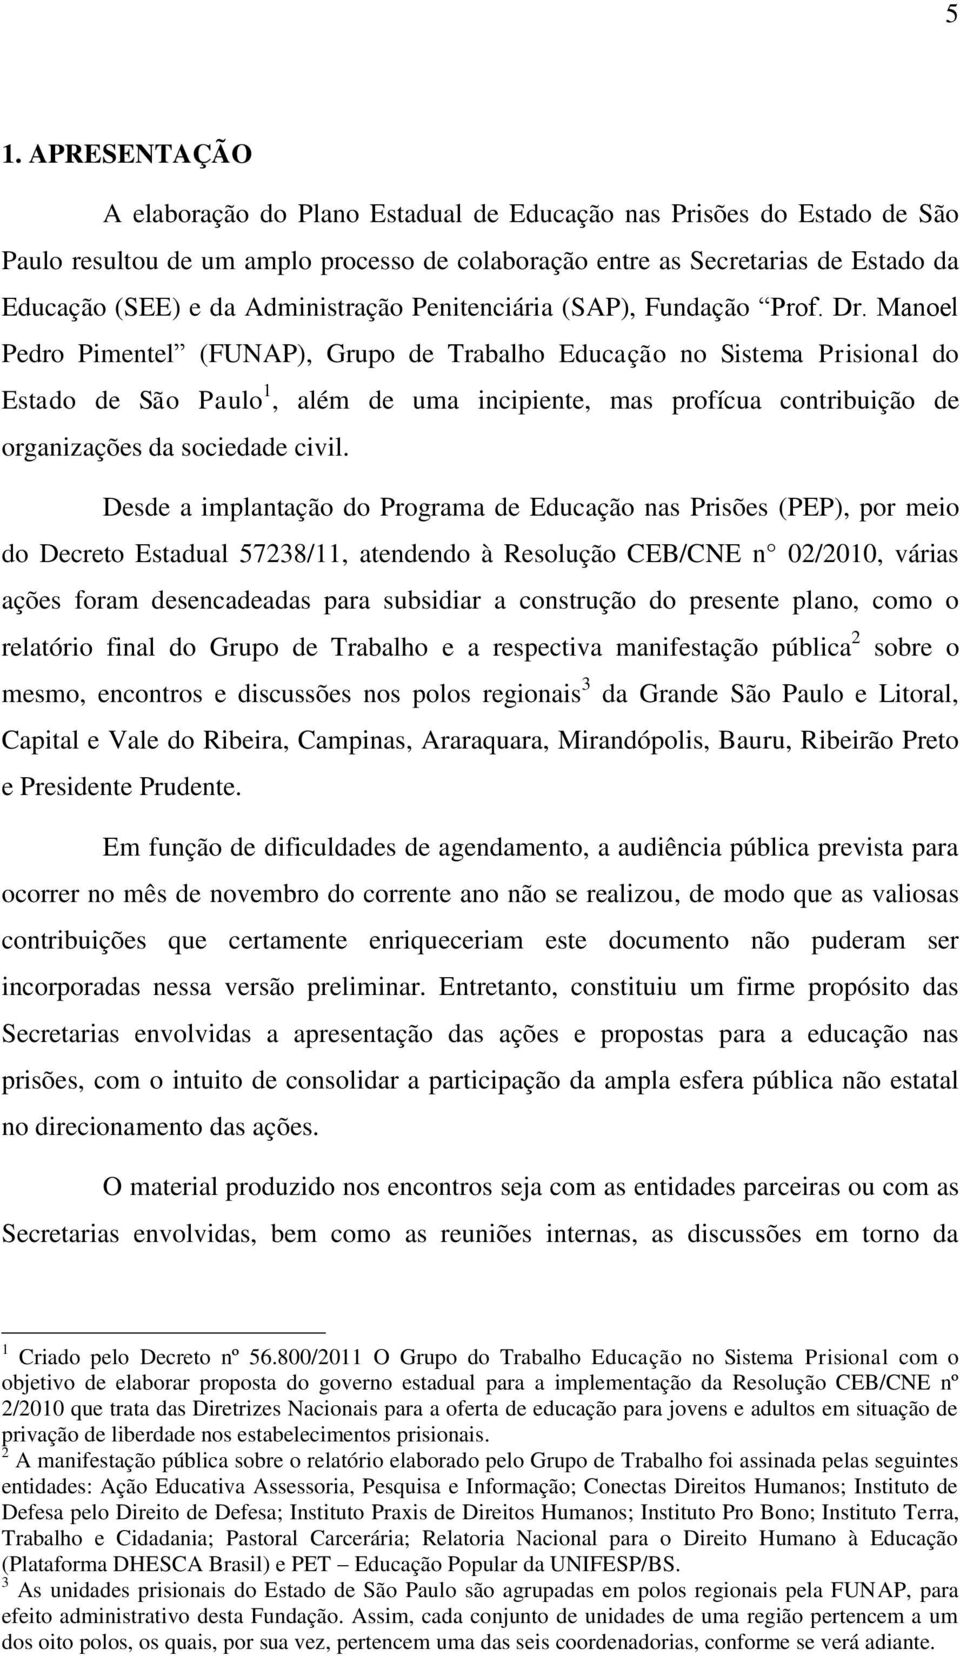 Manoel Pedro Pimentel (FUNAP), Grupo de Trabalho Educação no Sistema Prisional do Estado de São Paulo 1, além de uma incipiente, mas profícua contribuição de organizações da sociedade civil.